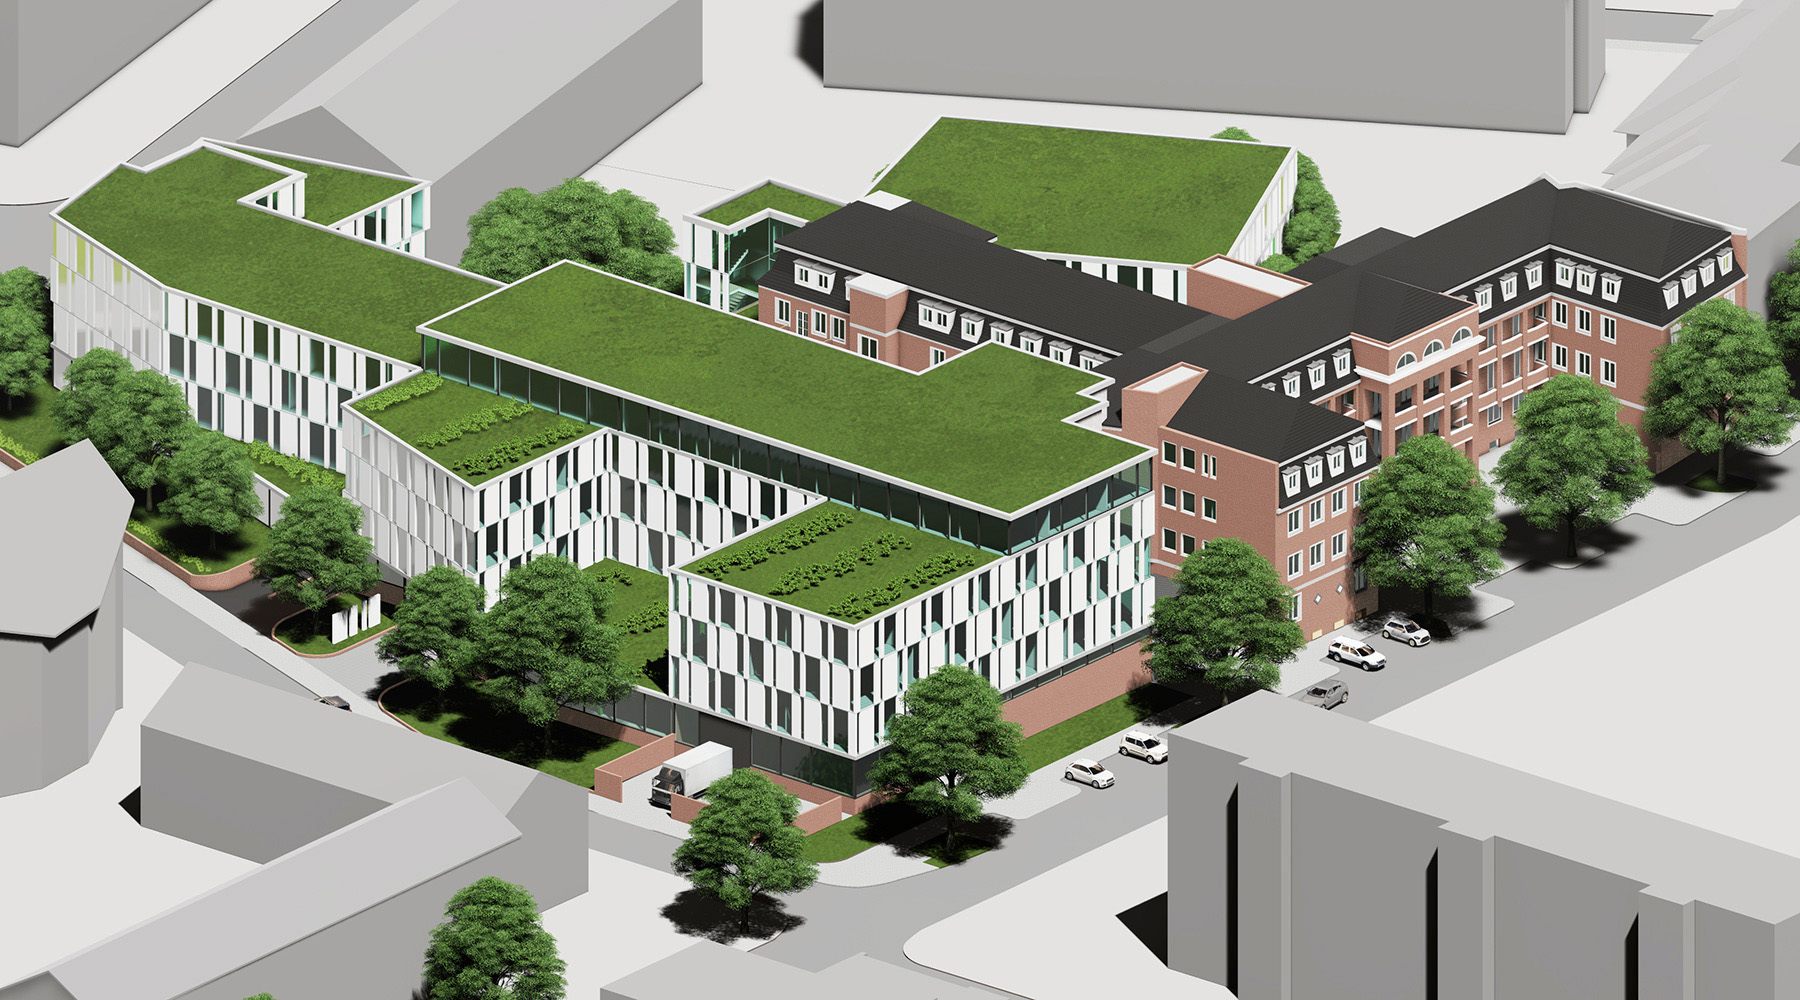 Klinikstandort in Düsseldorf. 3D-Modell. Weiße Gebäude mit grünbewachsenen Flachdächern. Rechts bestehendes Gebäude: Backstein mit schwarzen Dächern.